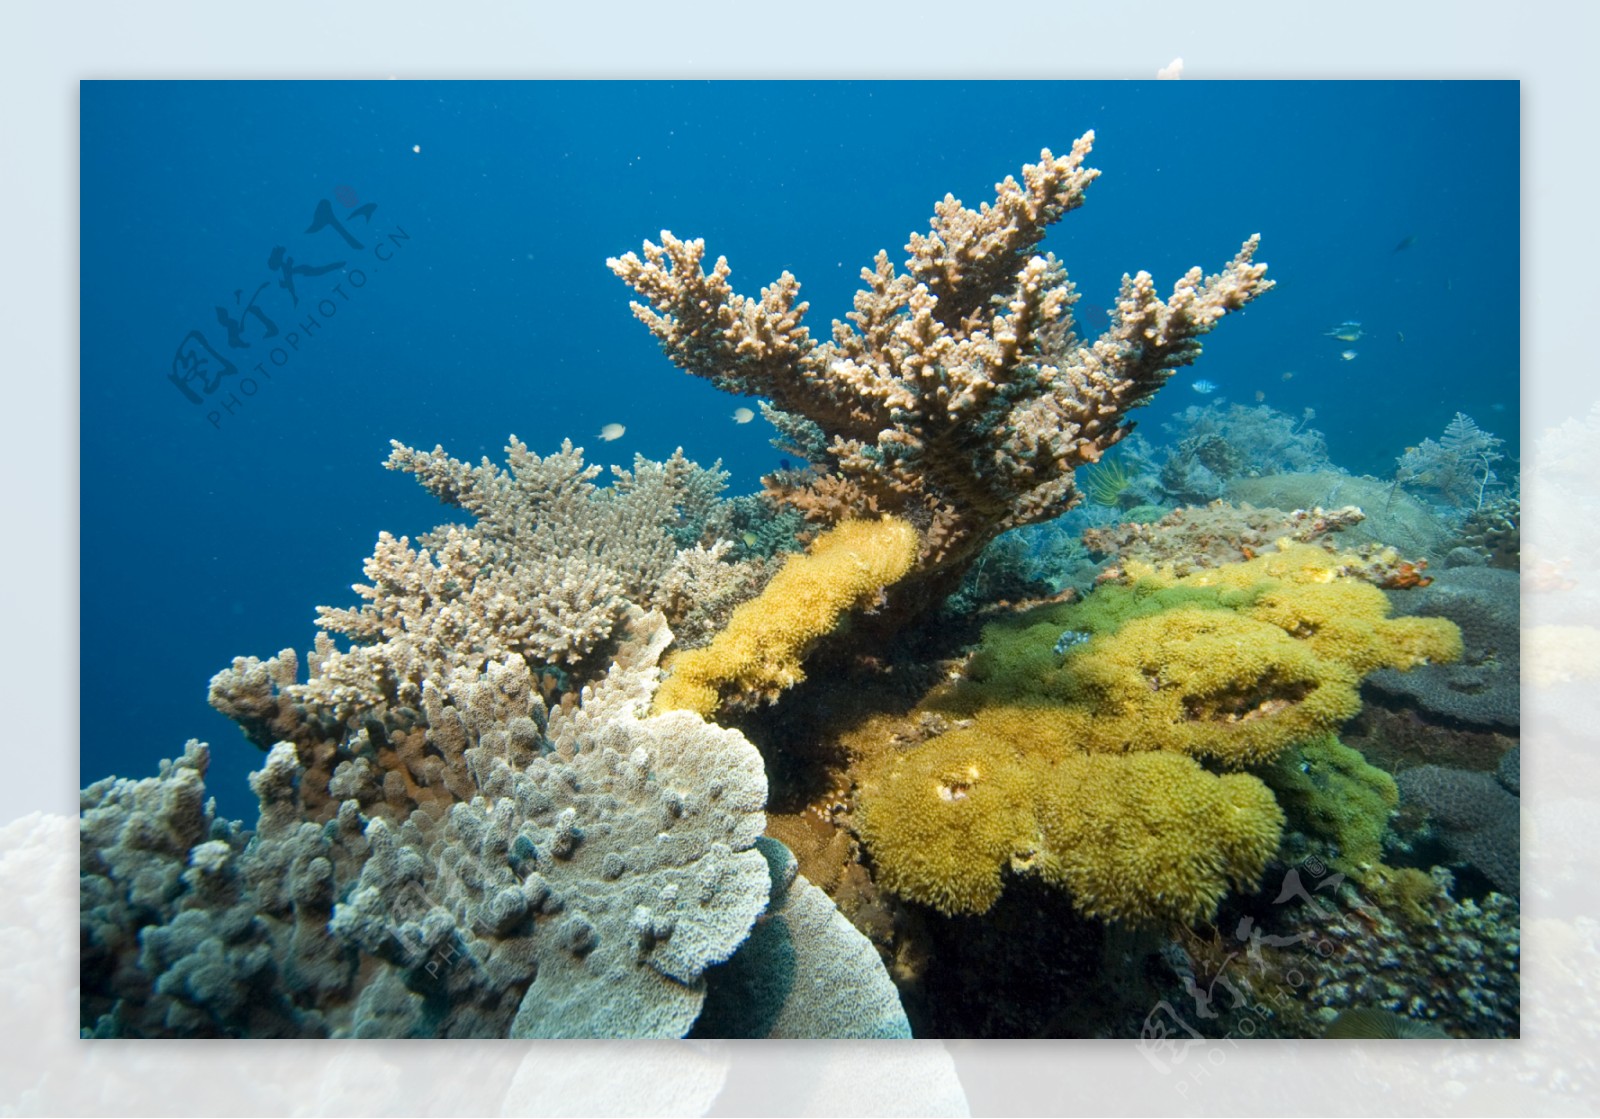 形态各异的珊瑚